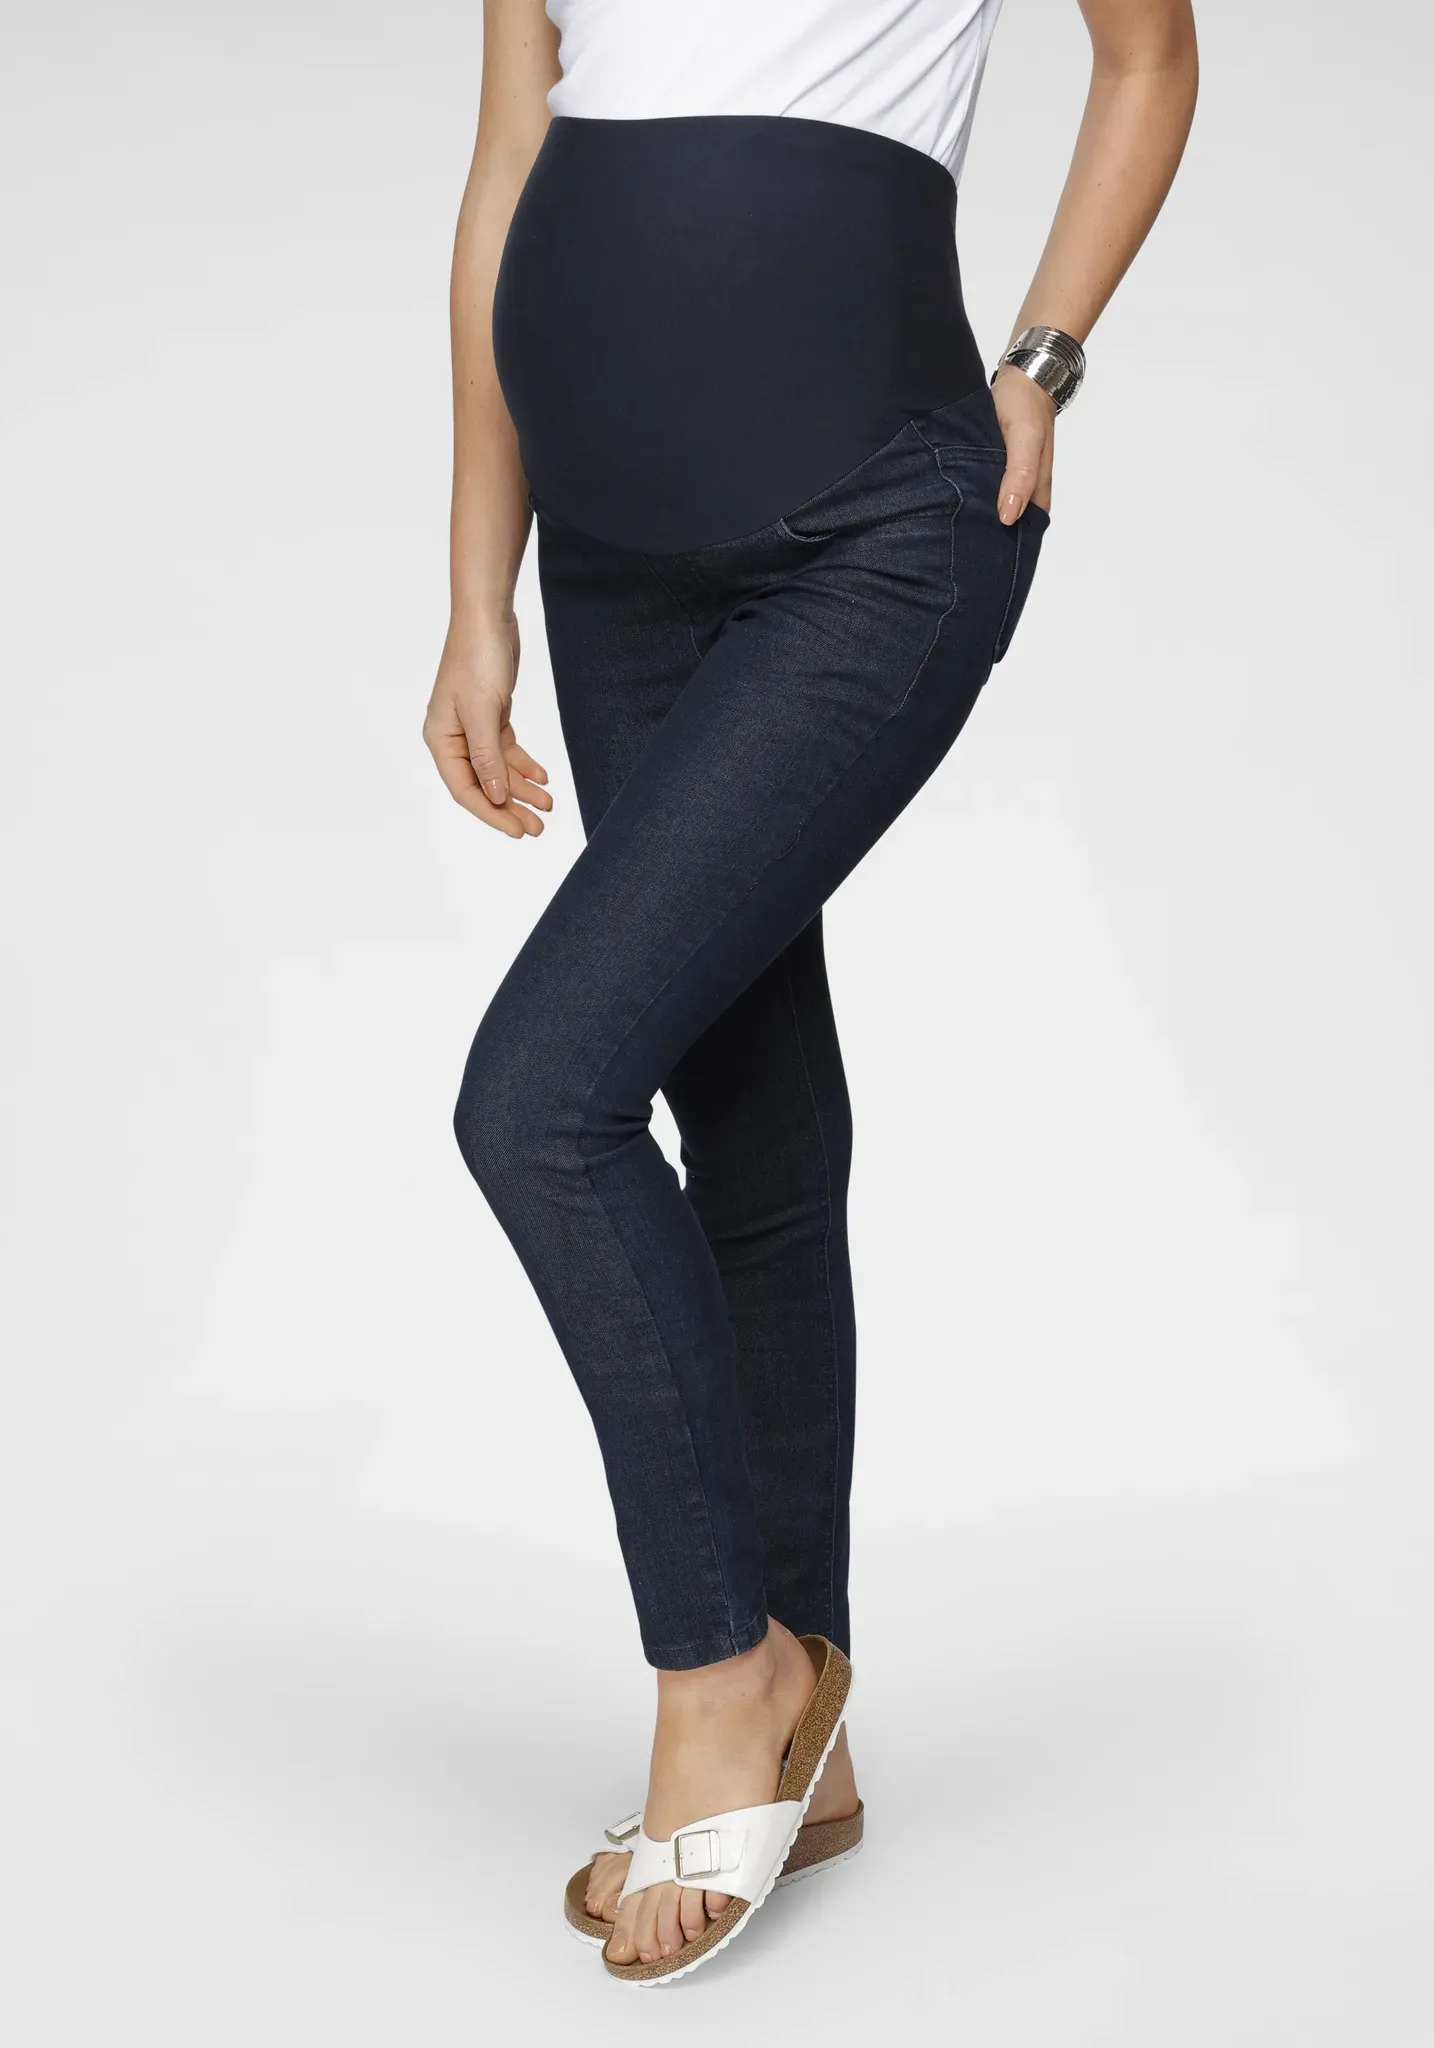 Umstandsjeans NEUN MONATE "Jeans für Schwangerschaft und Stillzeit" Gr. 46, N-Gr, blau (rinsed) Damen Jeans Umstandsmode in modischer Waschung